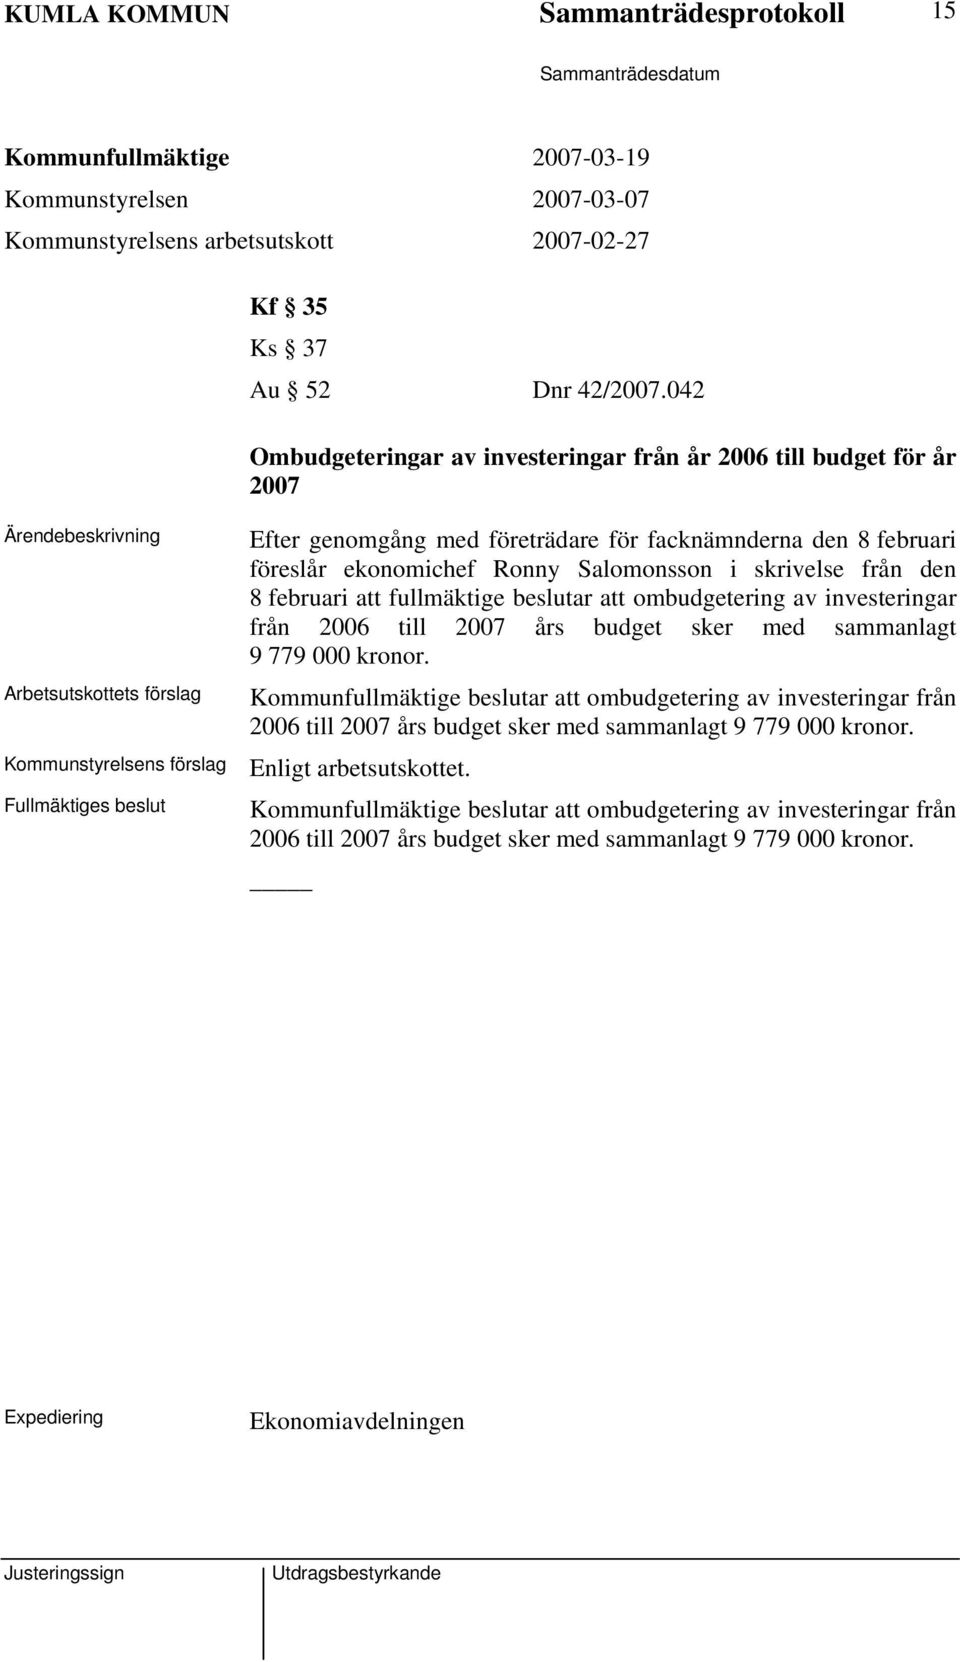 februari föreslår ekonomichef Ronny Salomonsson i skrivelse från den 8 februari att fullmäktige beslutar att ombudgetering av investeringar från 2006 till 2007 års budget sker med sammanlagt 9 779